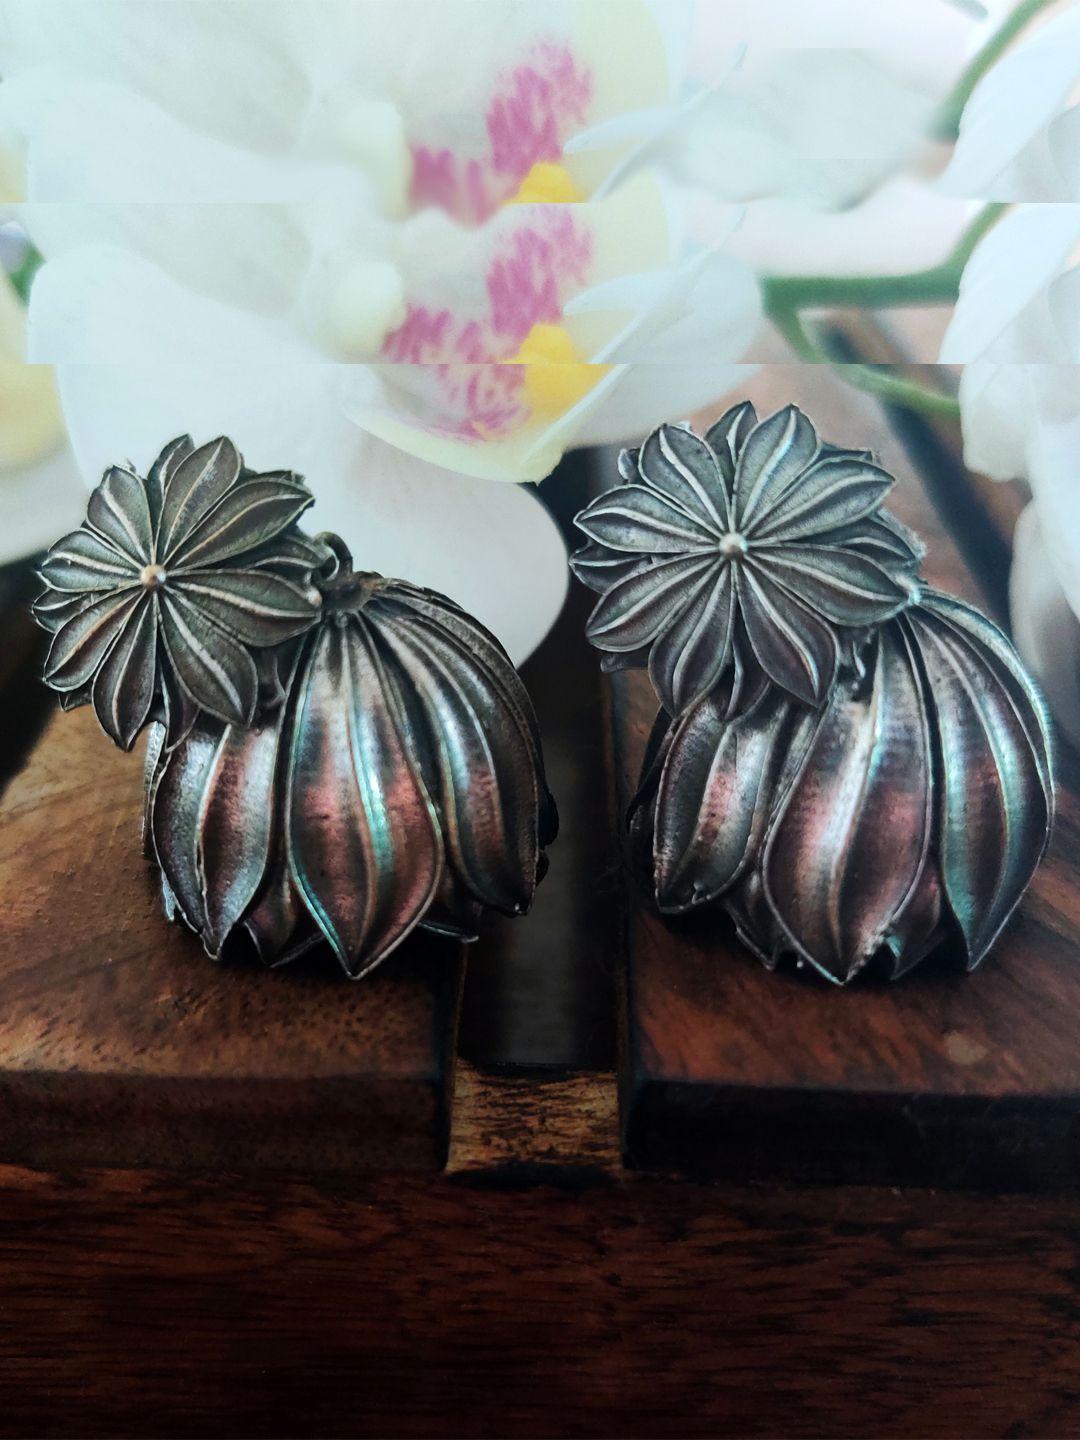 binnis wardrobe silver-toned floral jhumkas earrings